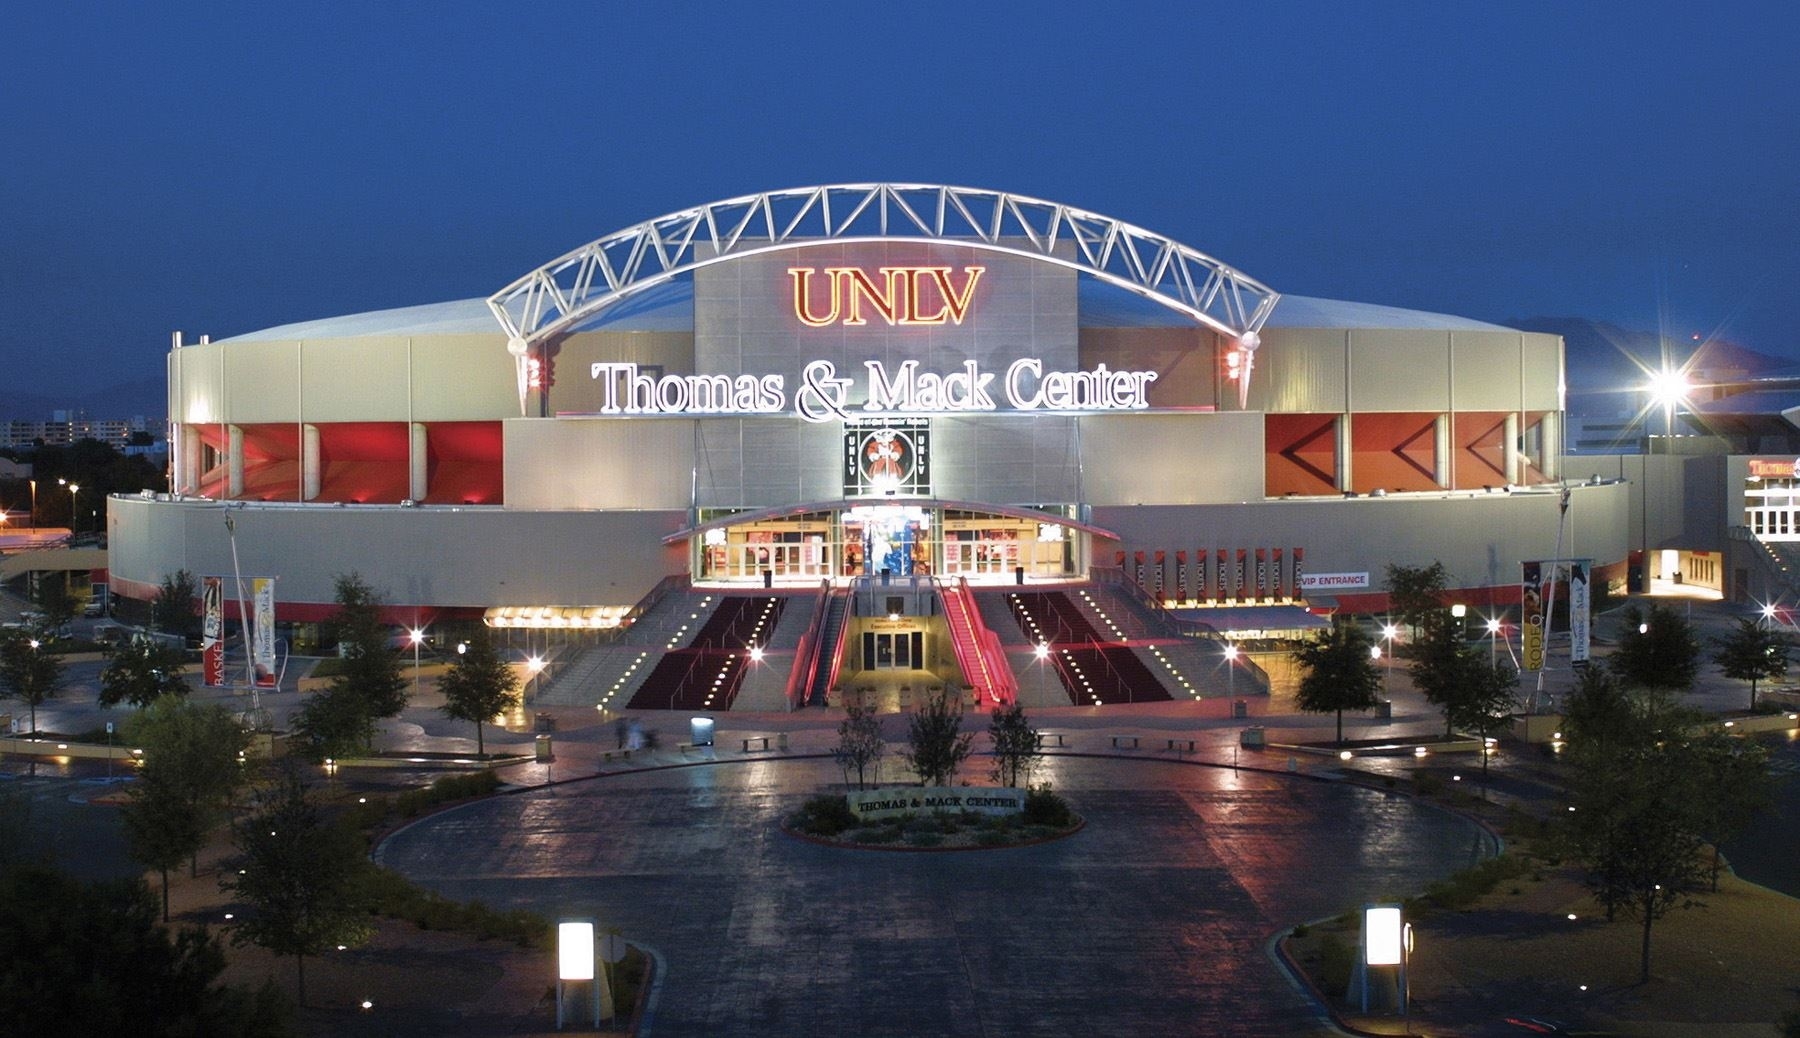 Thomas &amp; Mack Center Regarding Thomas And Mack Events Calendar - Printable Calendar 2020-2021 Las Vegas Calendar Of Events June 2021